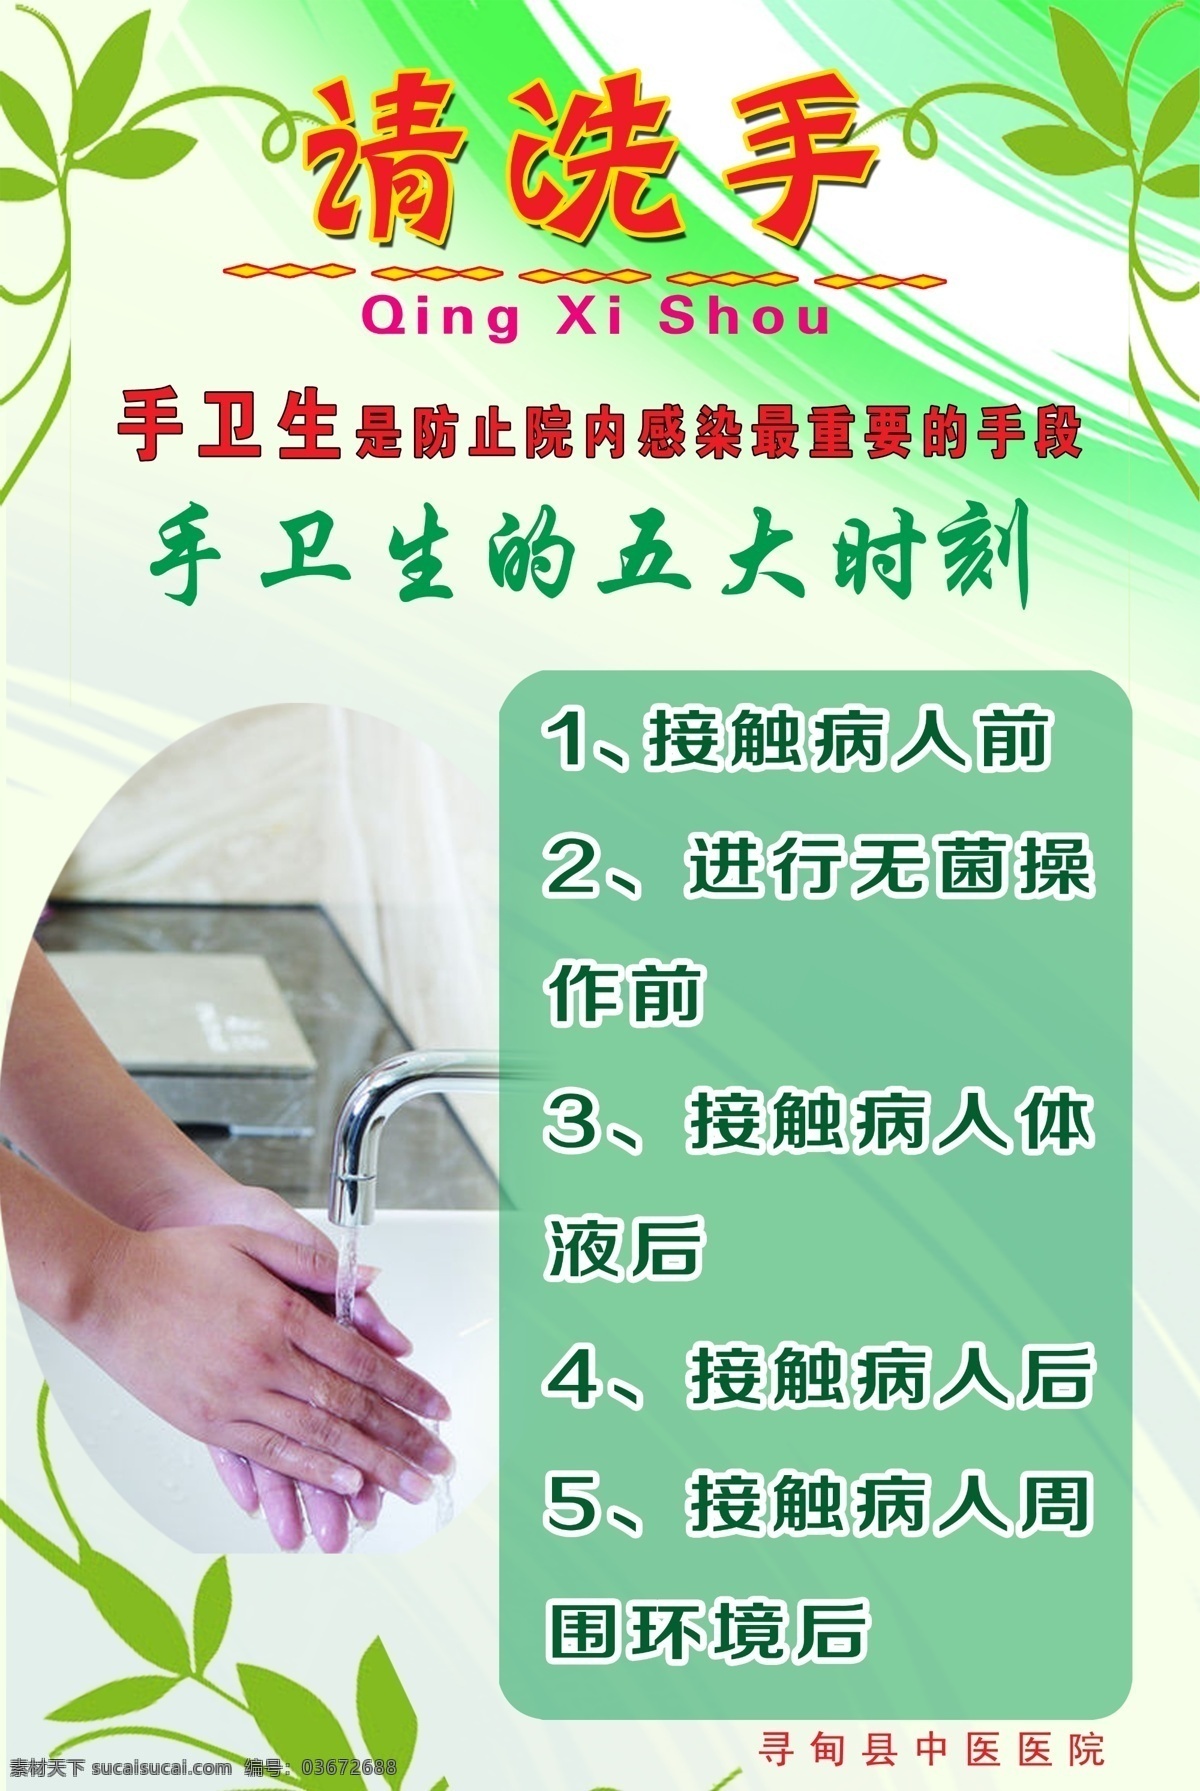 手 卫生 五大 时刻 手卫生 洗手 防止院内感染 手卫生五时刻 请洗手 医院各类标牌 流程图